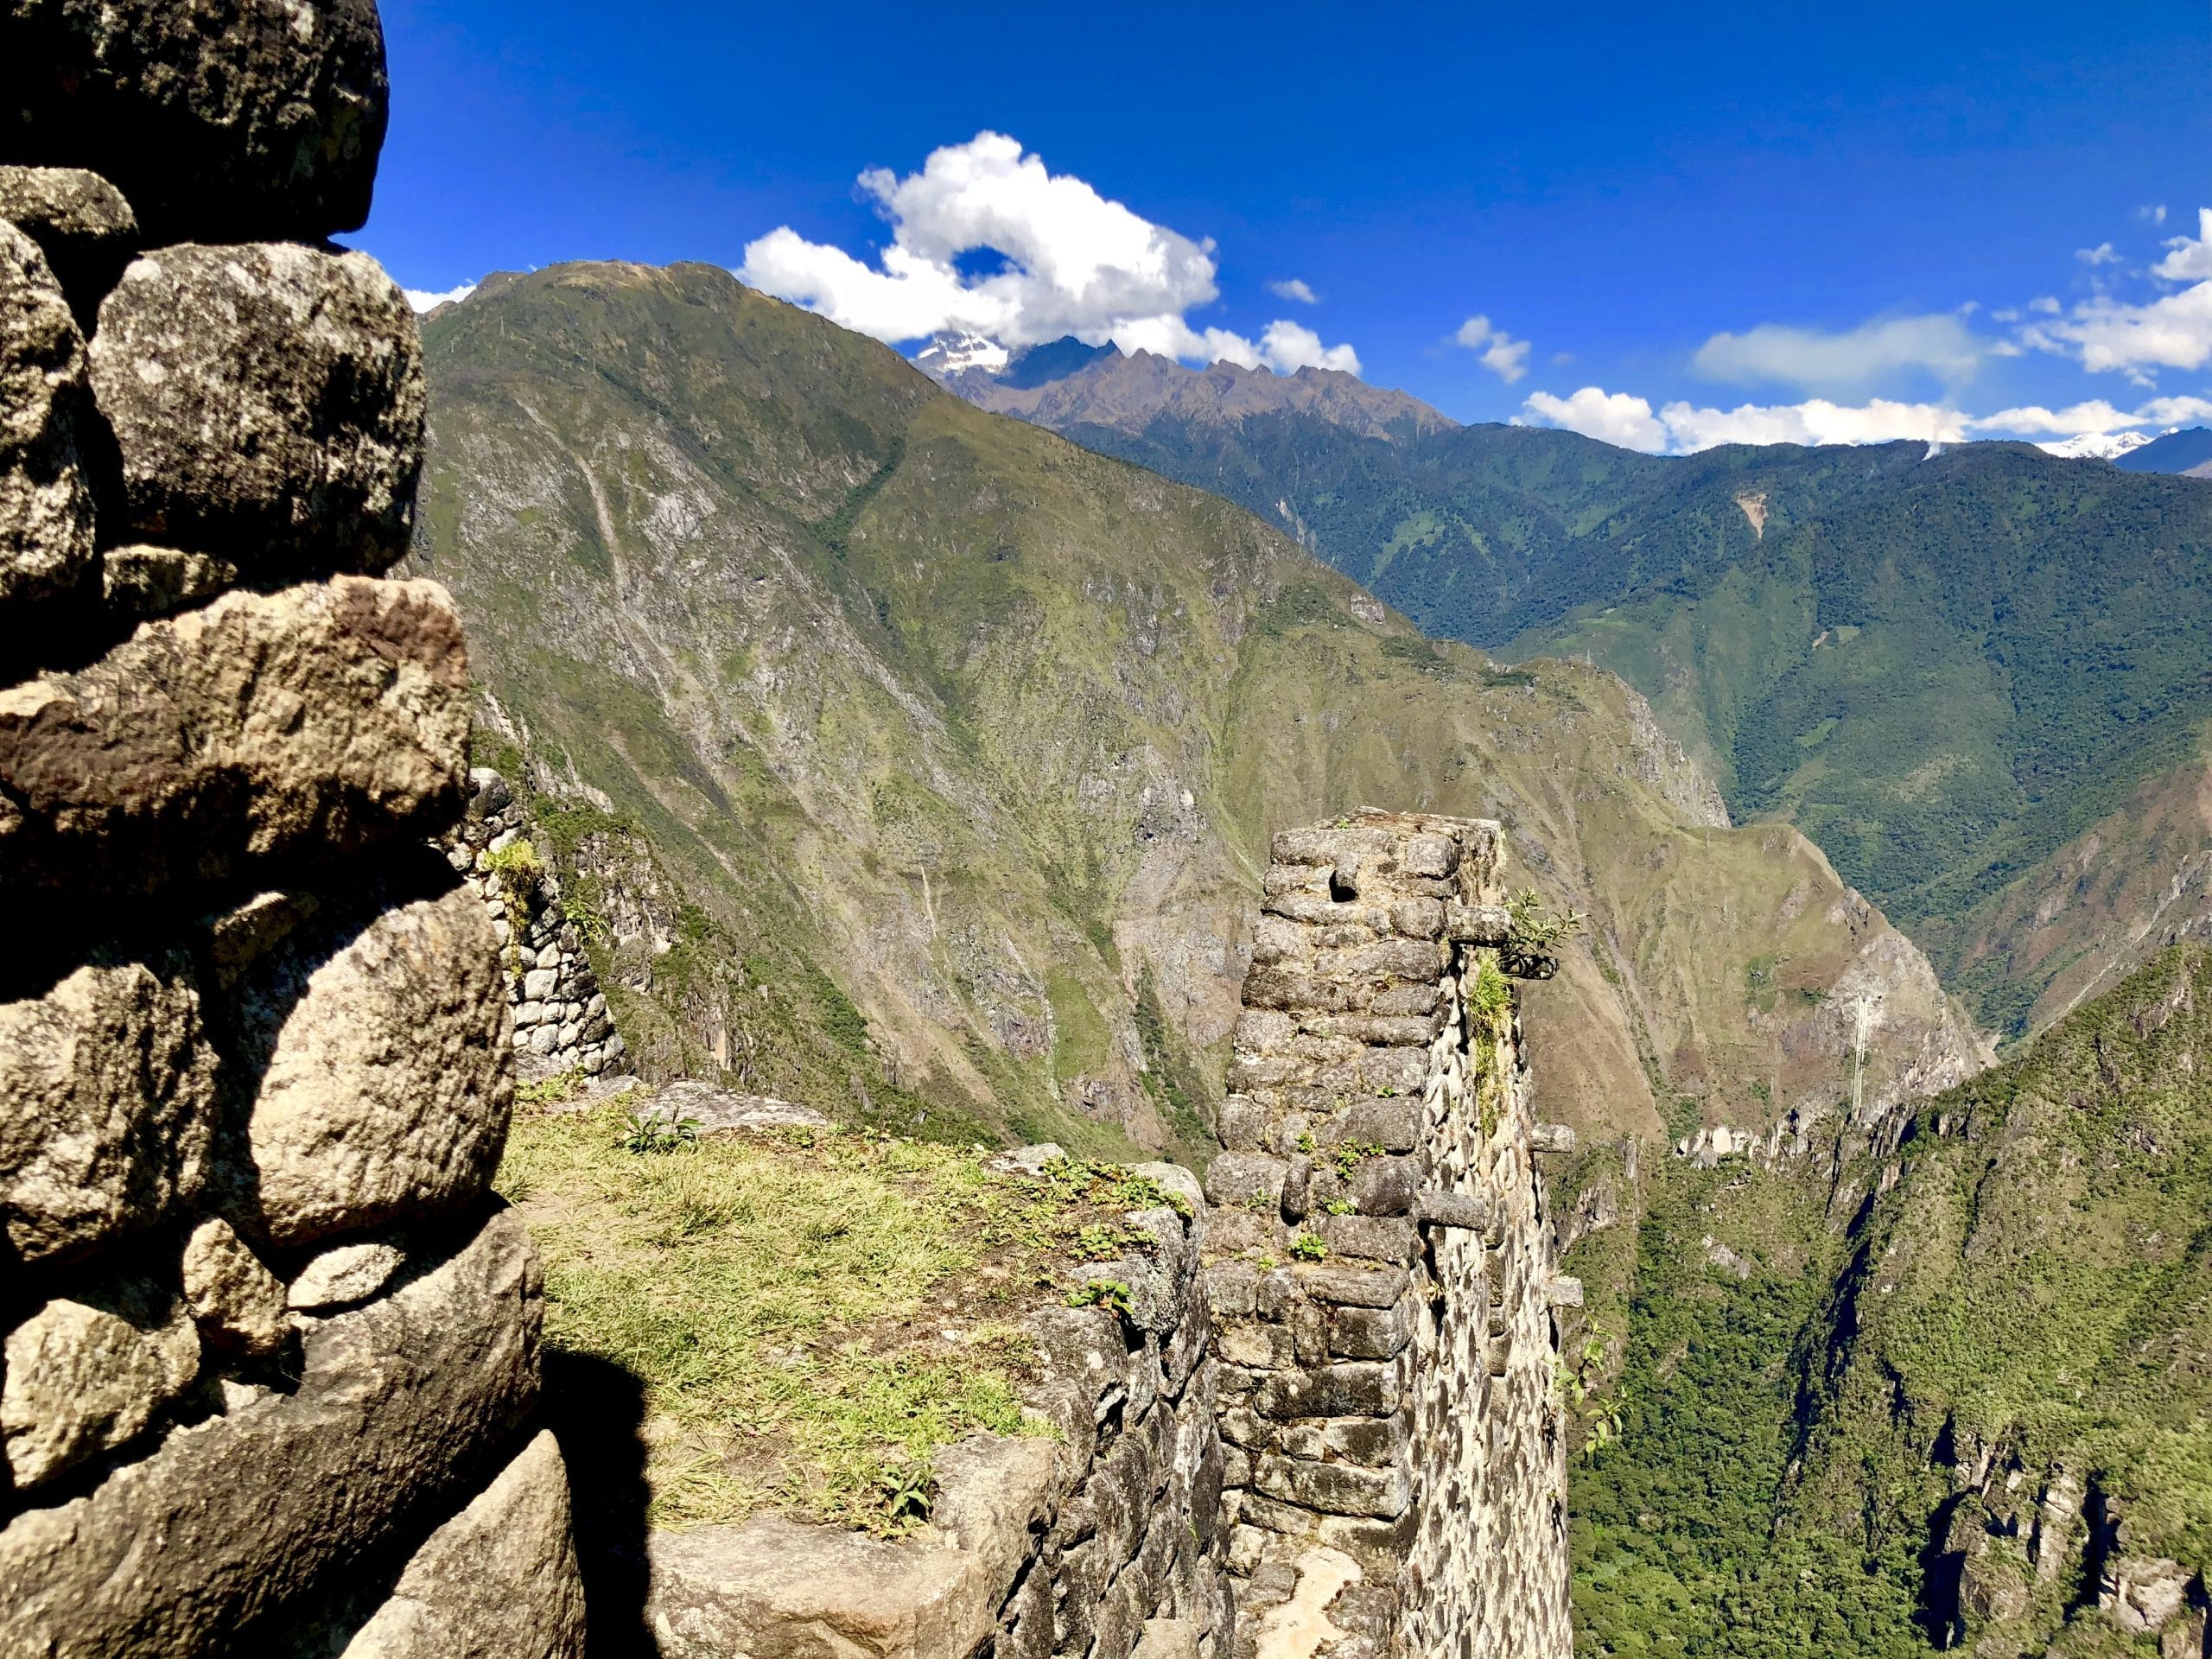 View from Huyanu Picchu